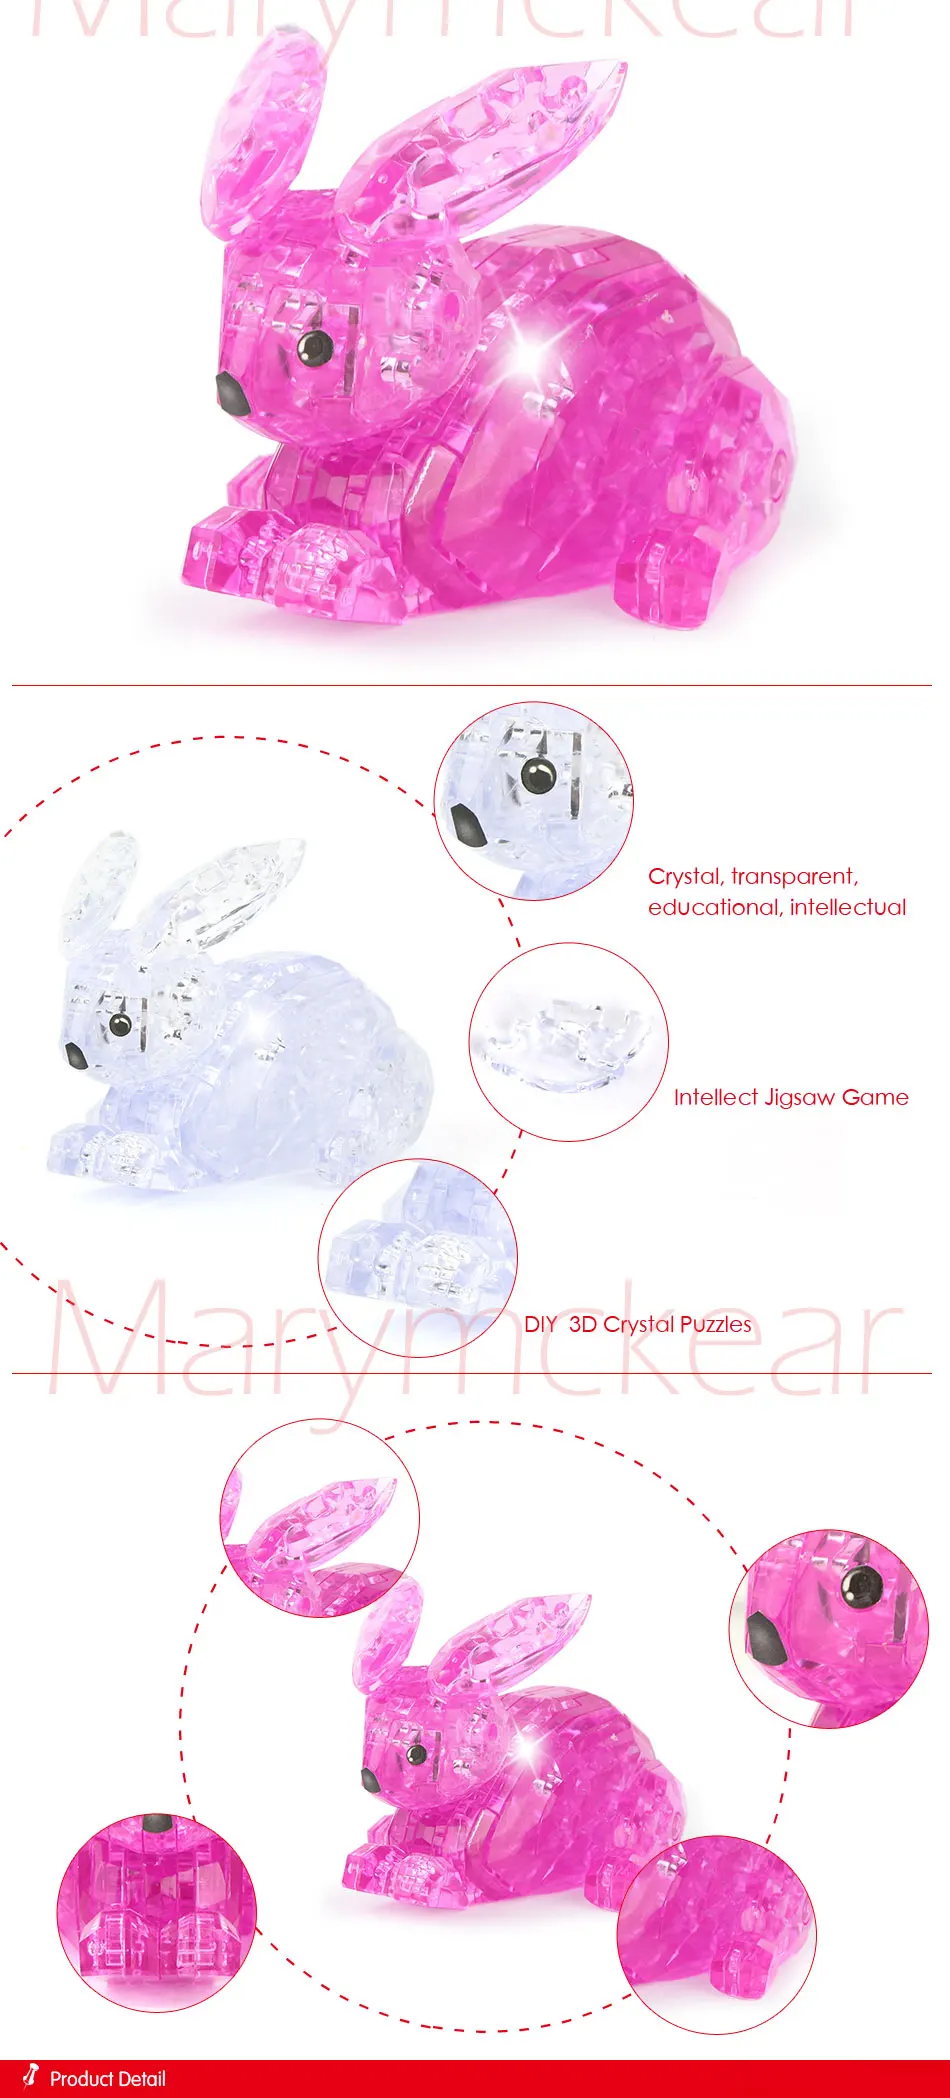 Интеллектуальная игрушка для детей 3d головоломка в розовом/прозрачном кролике форма Кристалл Головоломка дети Alatoys развивающие игрушки